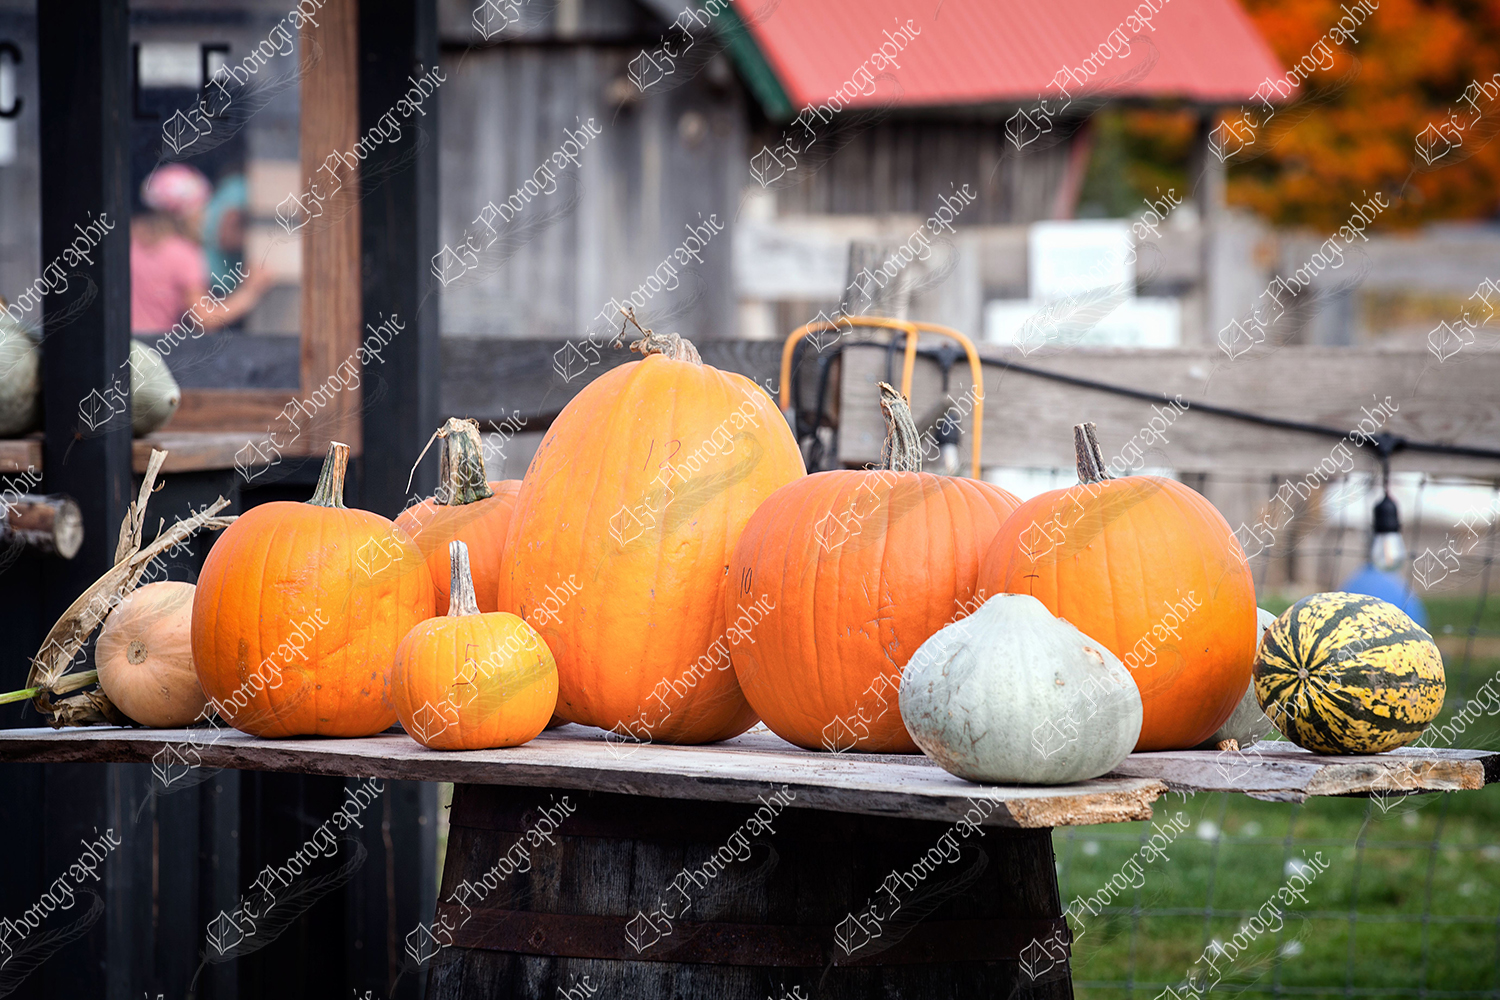 elze_photo_4616_citrouille_legume_automne_large_amount_pumpkins